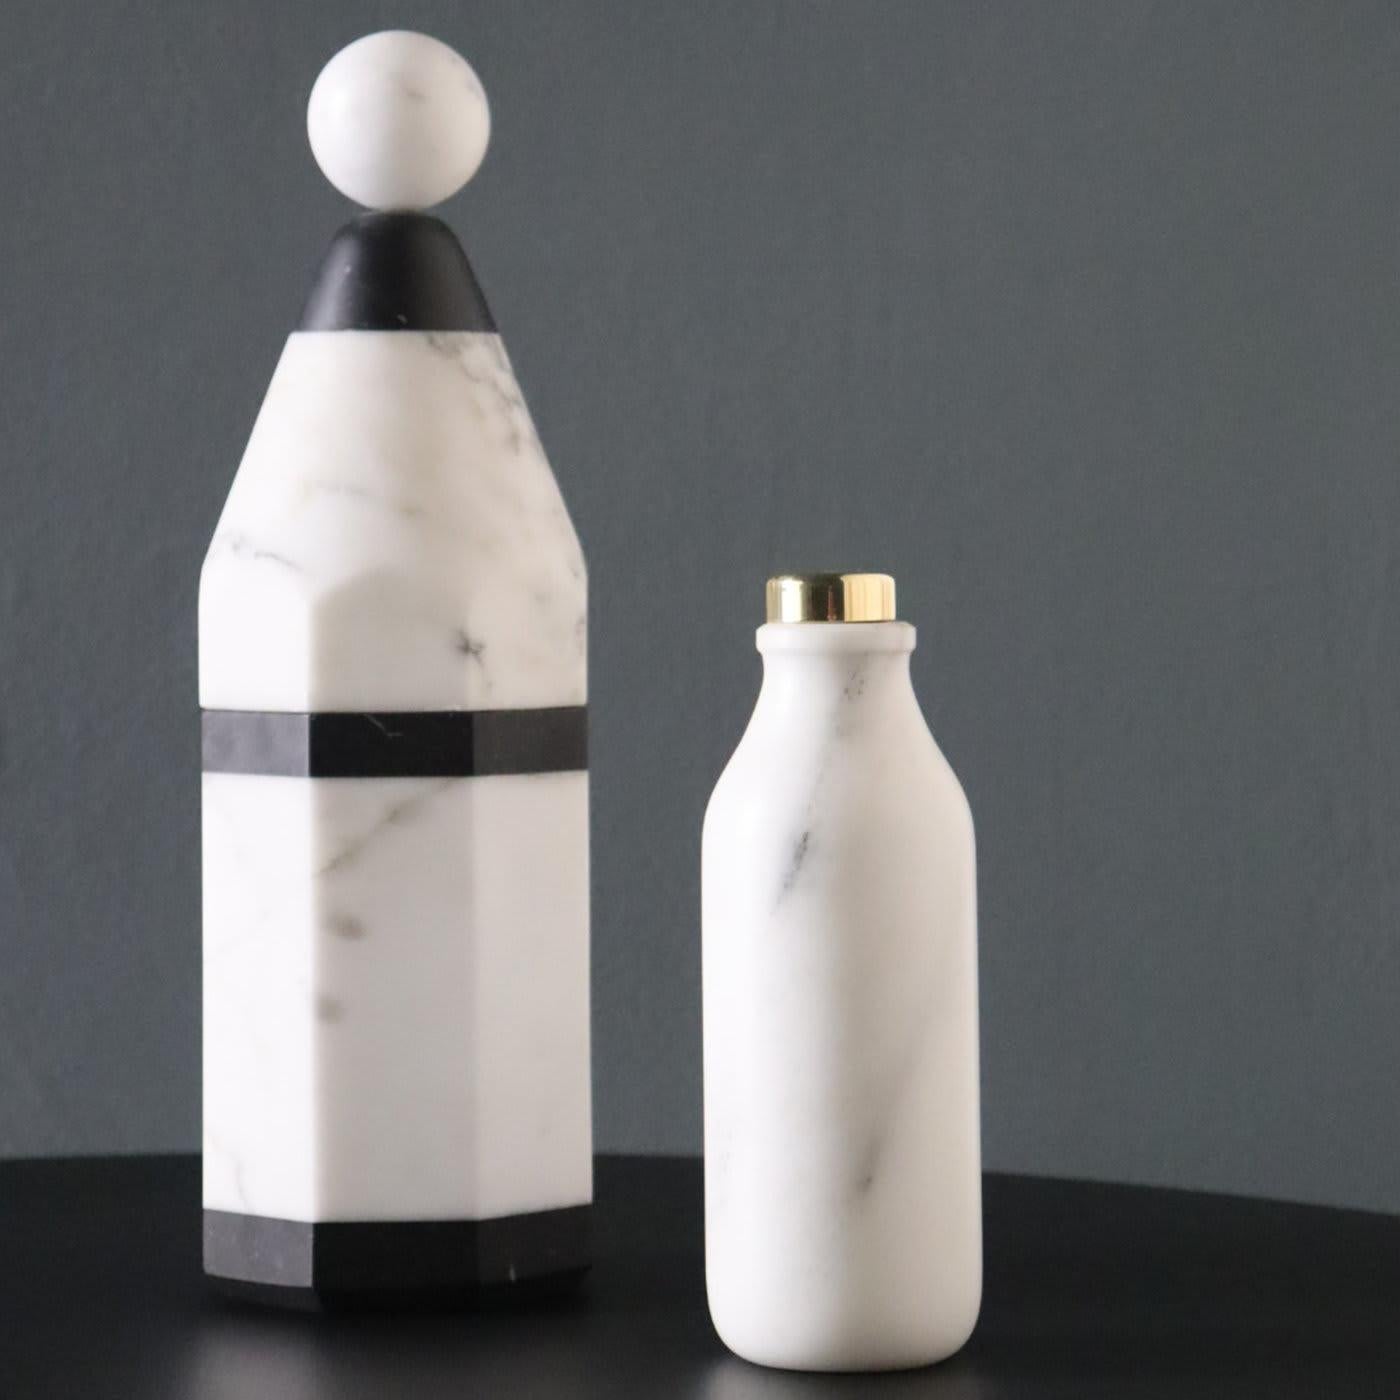 Diese auffällige Flasche ist Teil der Coolers-Kollektion, die sich durch eine Mischung aus minimalistischem Design und edlen Materialien, traditioneller Handwerkskunst und zeitgenössischer Sensibilität auszeichnet. Das Ergebnis sind Flaschen, die